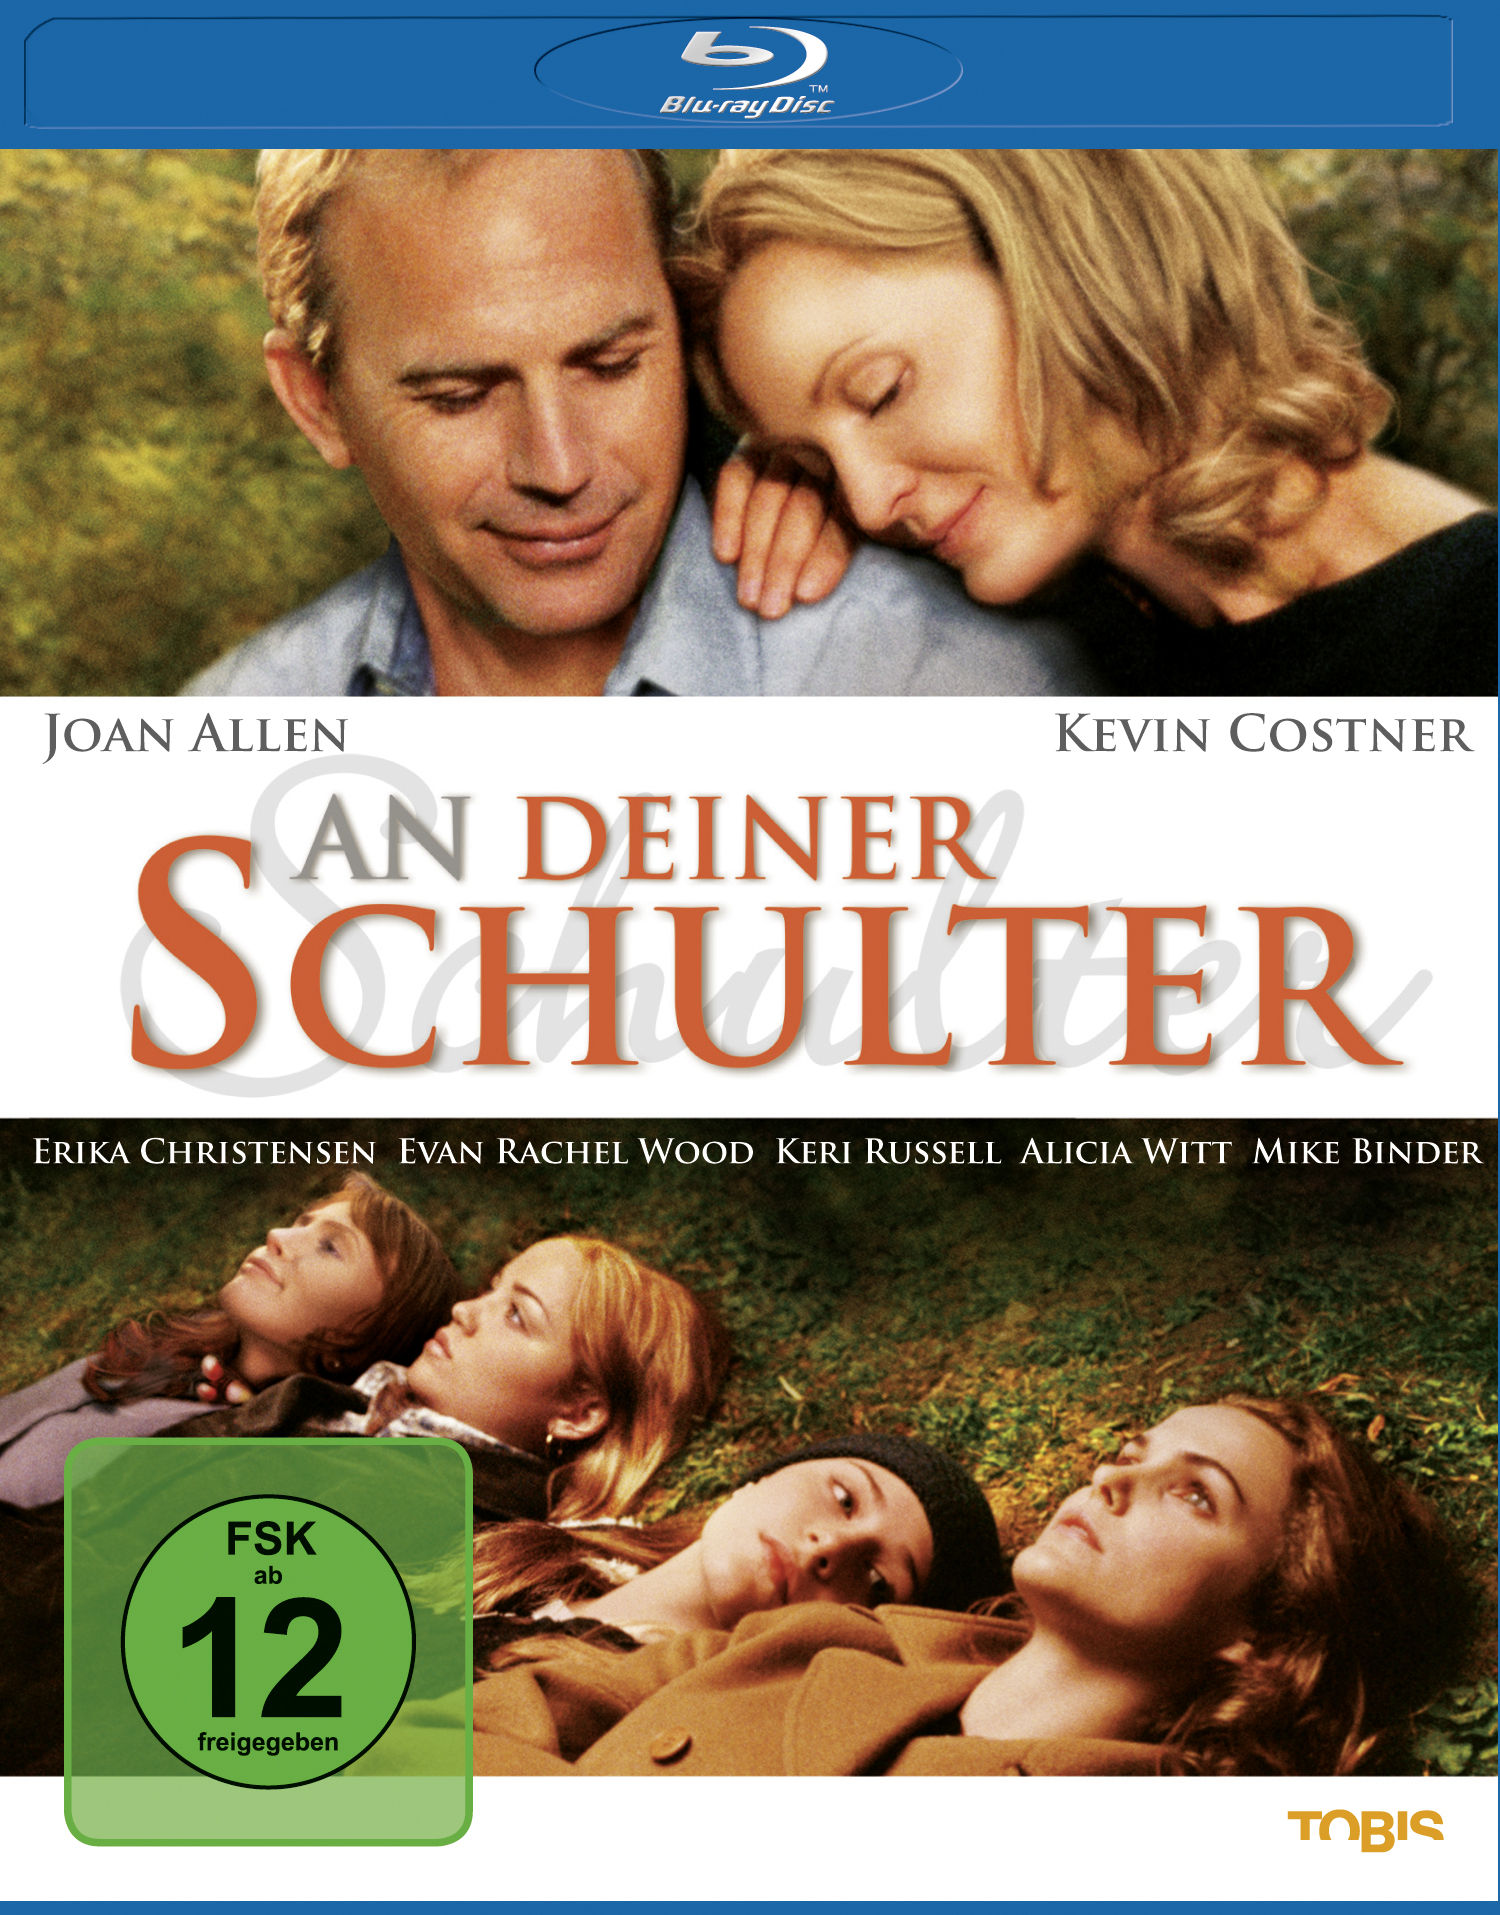 Blu-ray An Schulter Deiner